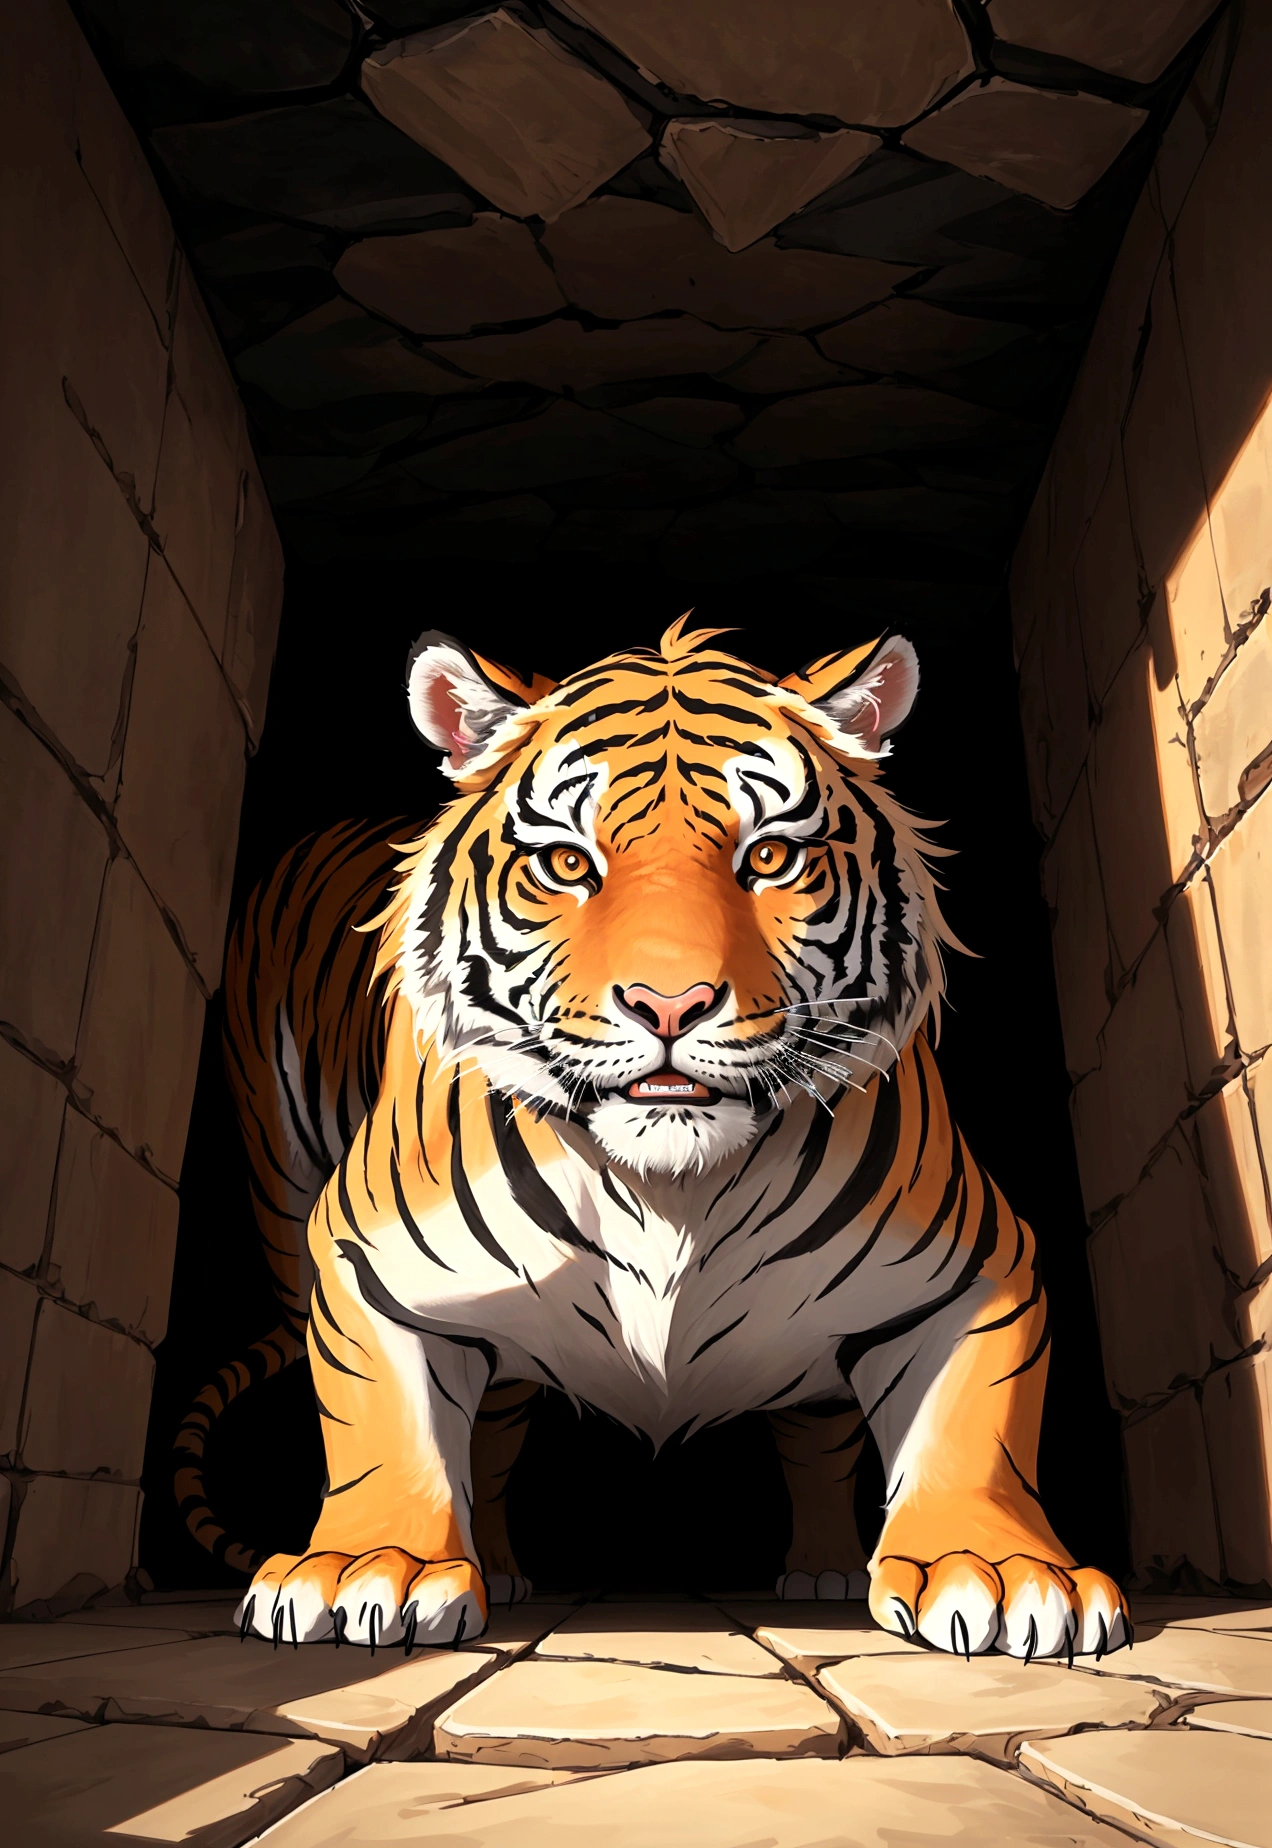 
"從被困在坑裡的老虎的角度創建圖像, 抬頭看. 視角應該是從坑底看, 老虎的目光向上. 坑上面, 應該有一個人和一隻兔子俯視老虎."